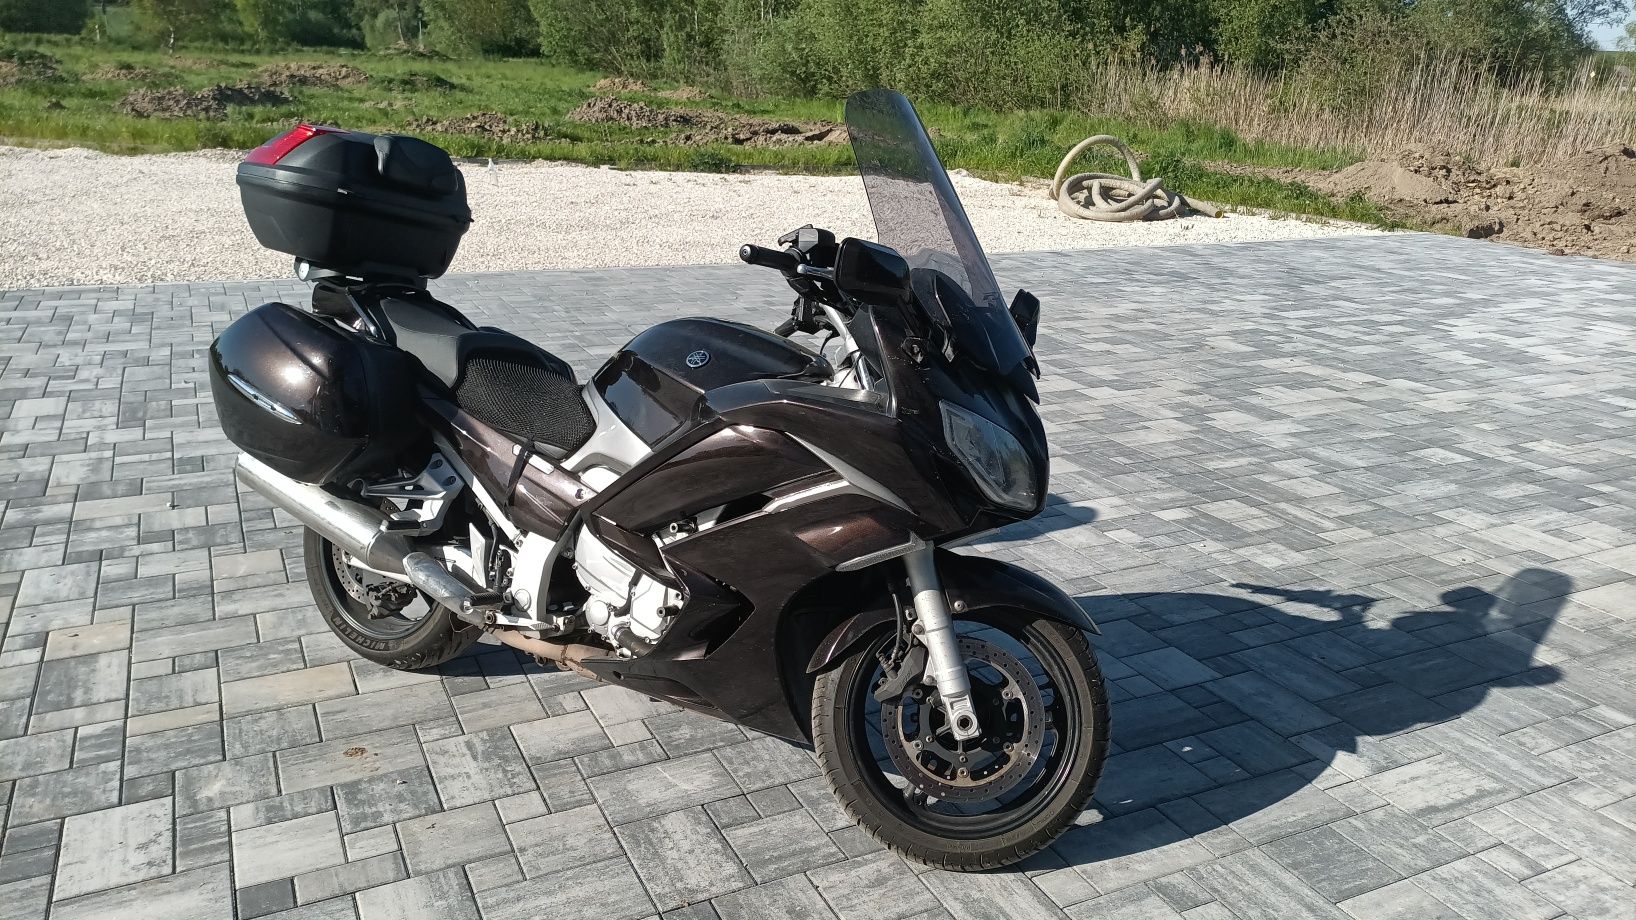 Fjr 1300 Wypożycz motocykl wypożyczalnia motocykli